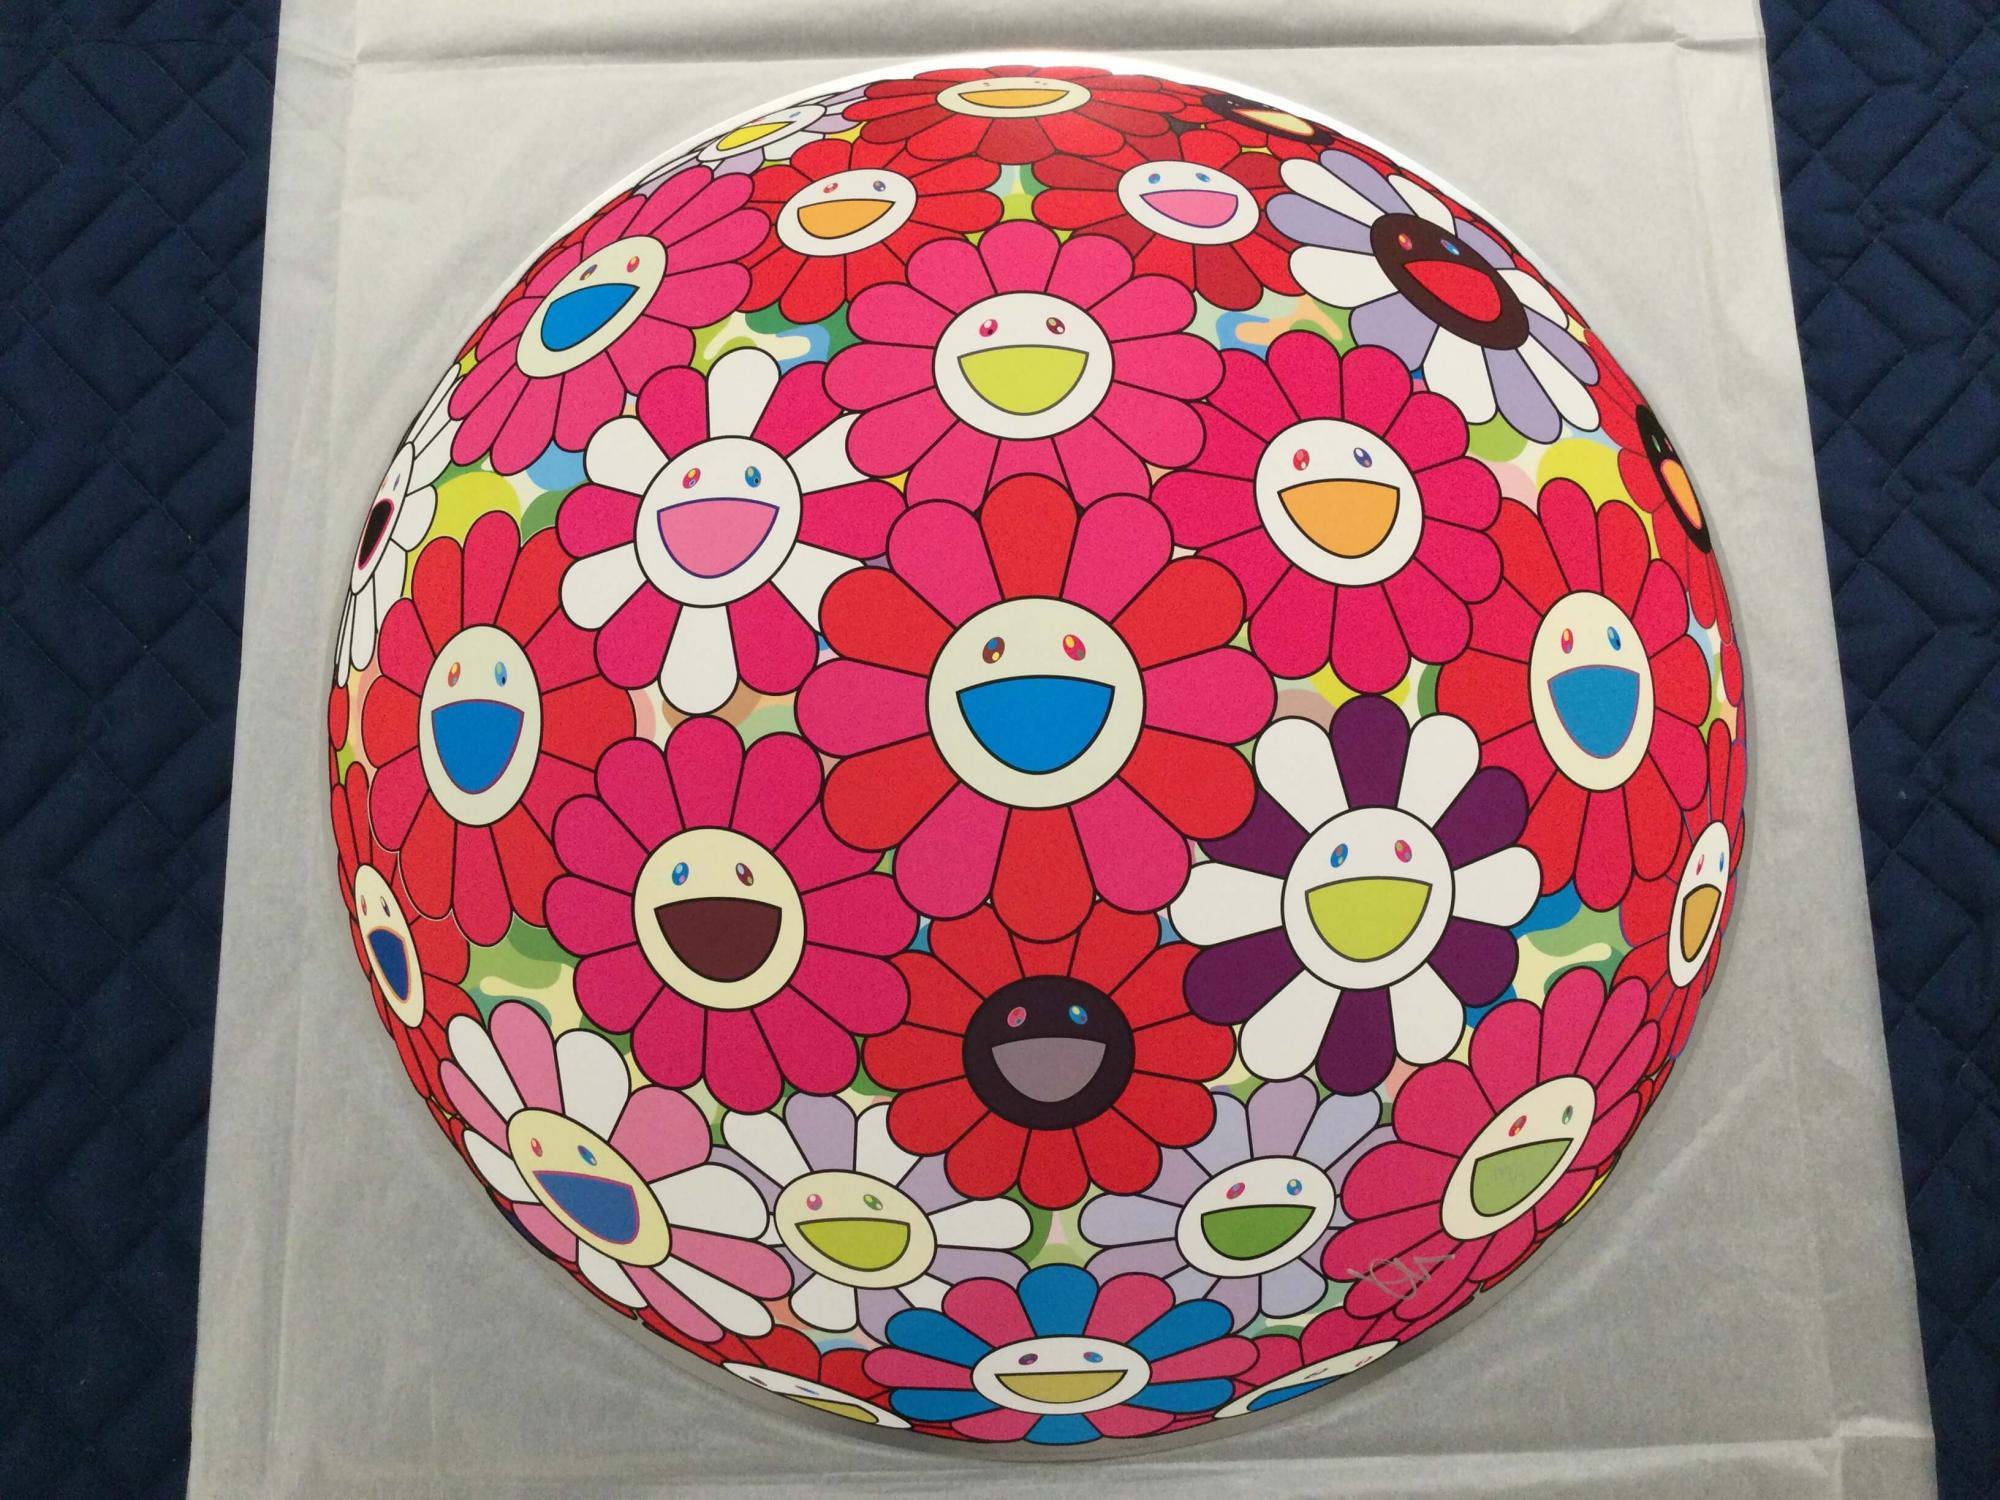 Flowerball (3D) - Werde rot! Limitierte Auflage (Druck) Murakami signiert und nummeriert – Print von Takashi Murakami